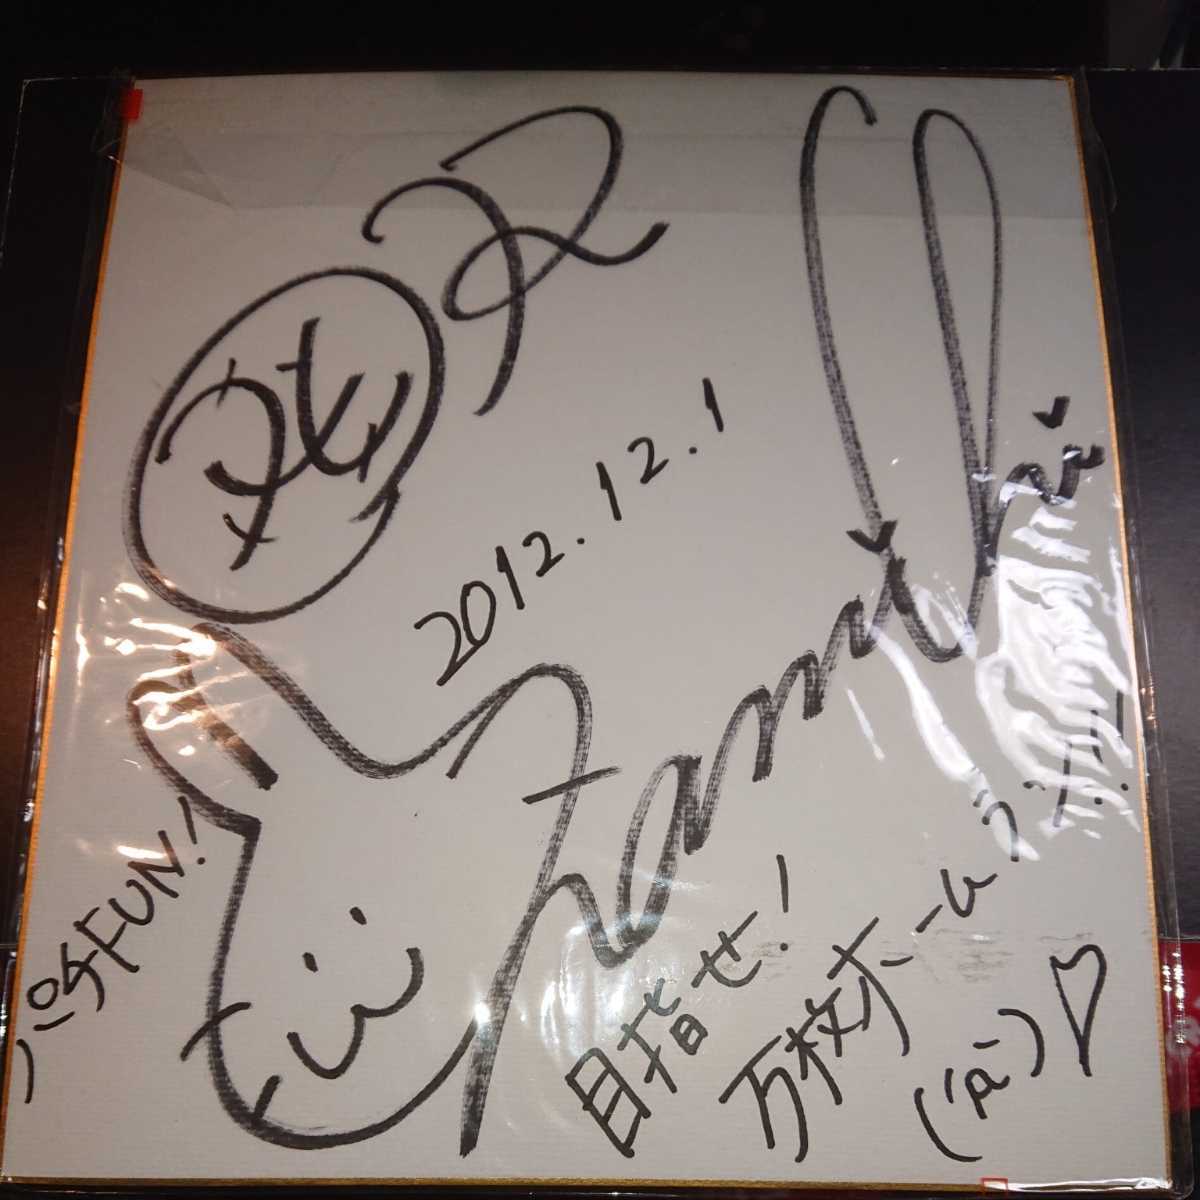 Home Run Namichi с автографом цветной бумаги 2012.12.1